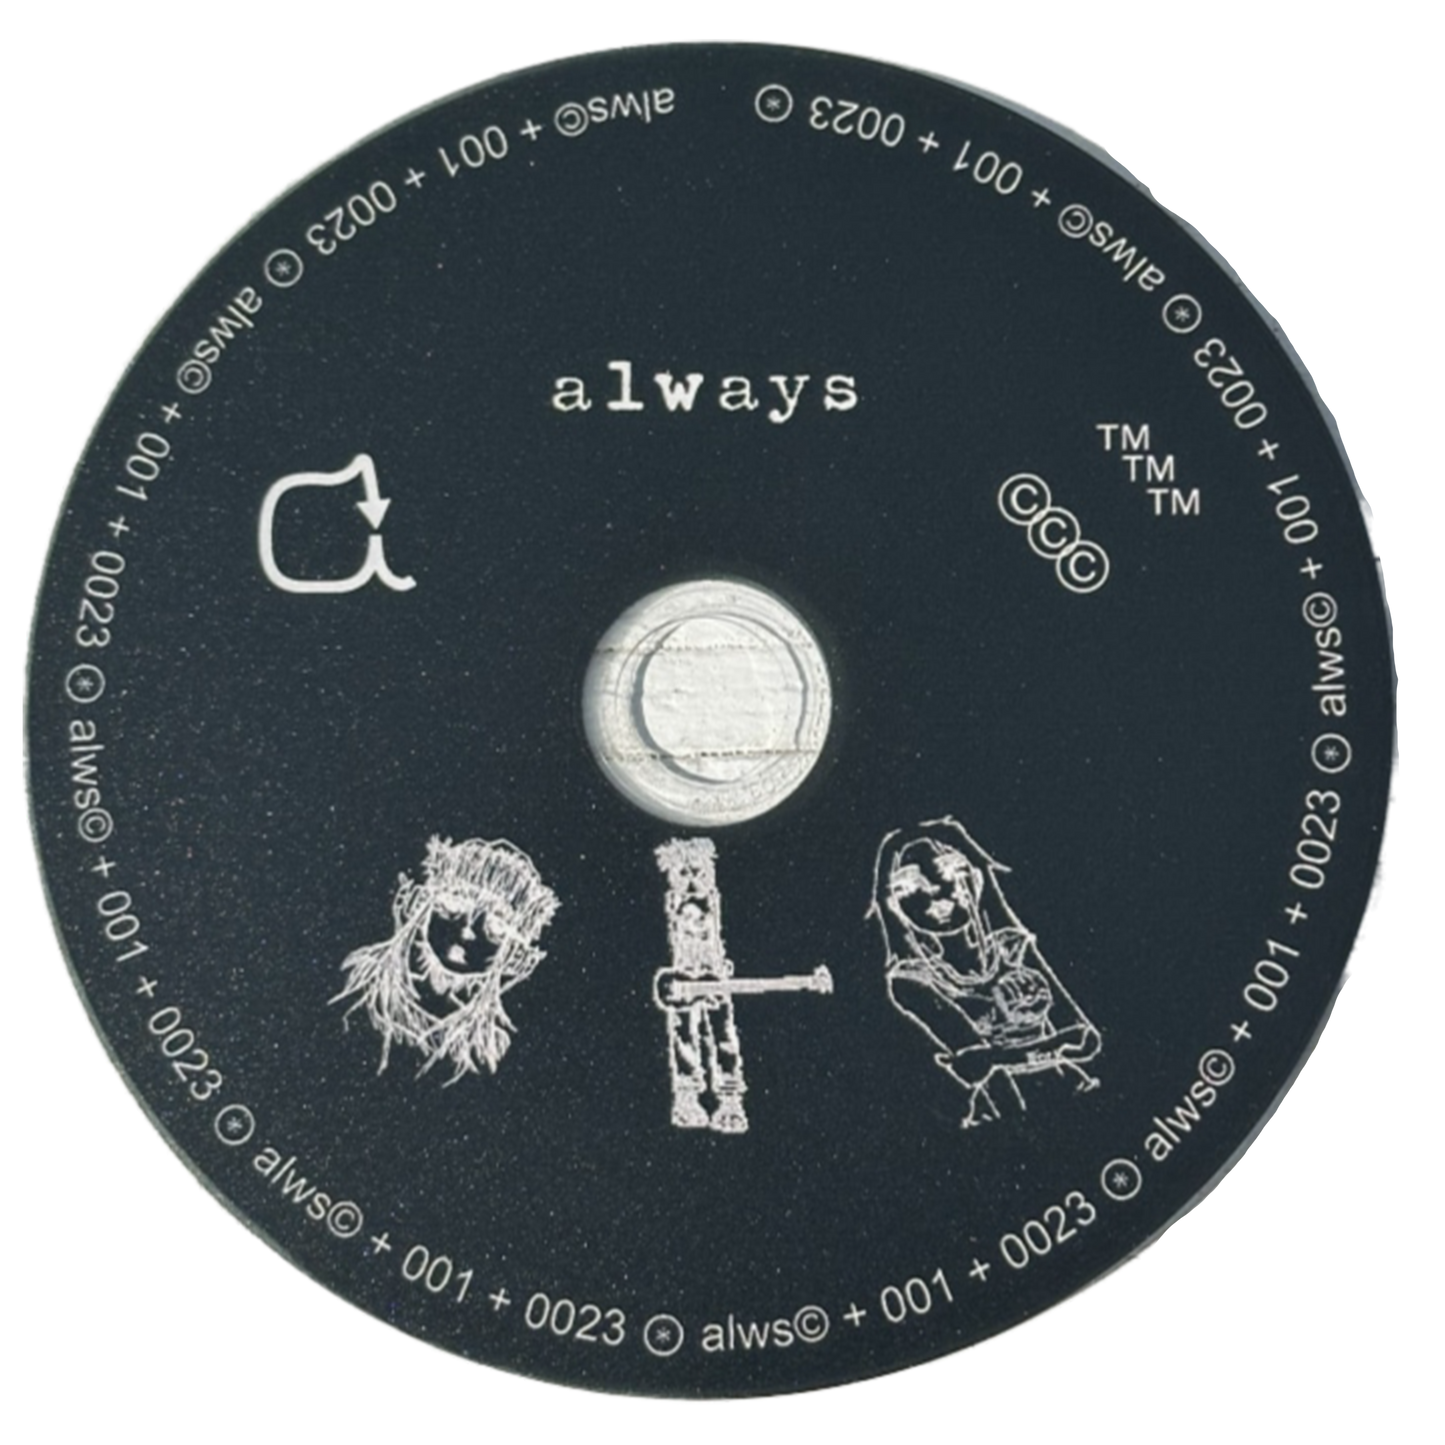 "always" album CD